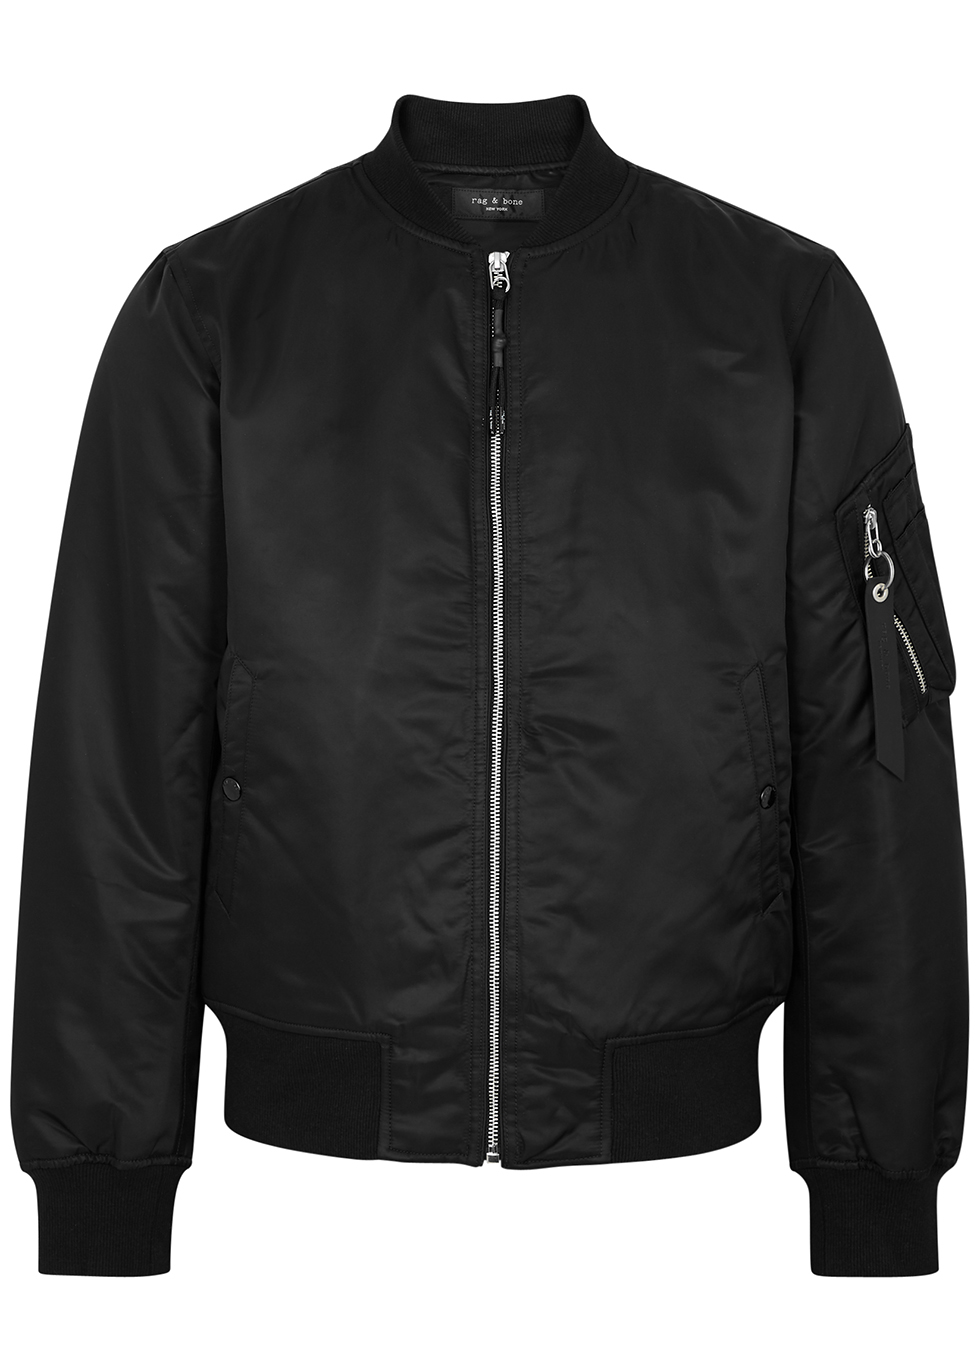 rag & bone Manston black nylon bomber jacket - Harvey Nichols